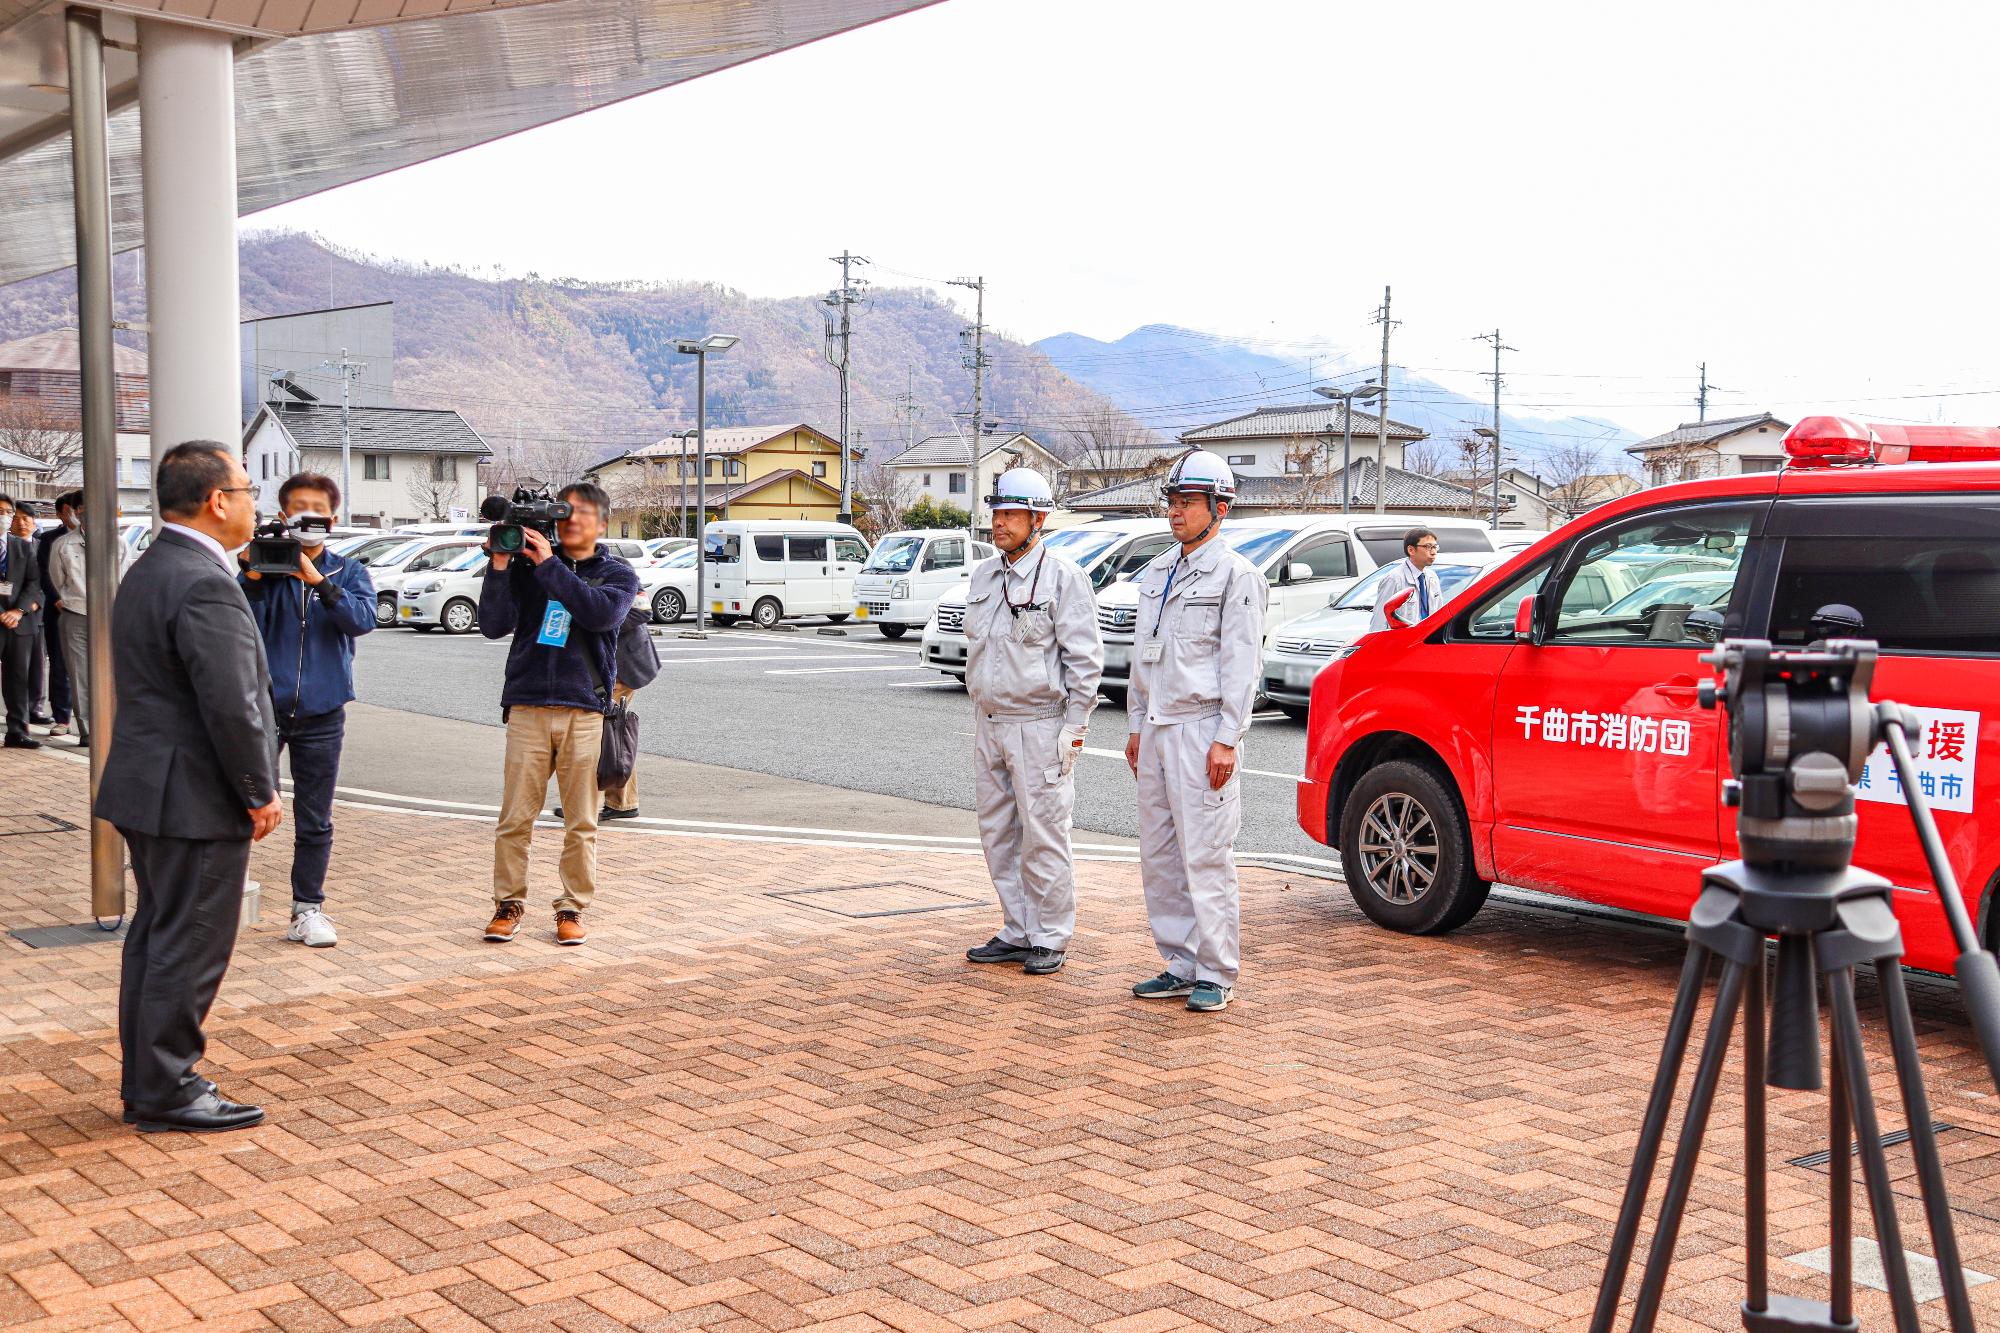 富山県射水市に向かって出発する危機管理防災課の職員2名が「気を付け」をして、小川修一市長から激励の挨拶を受ける様子